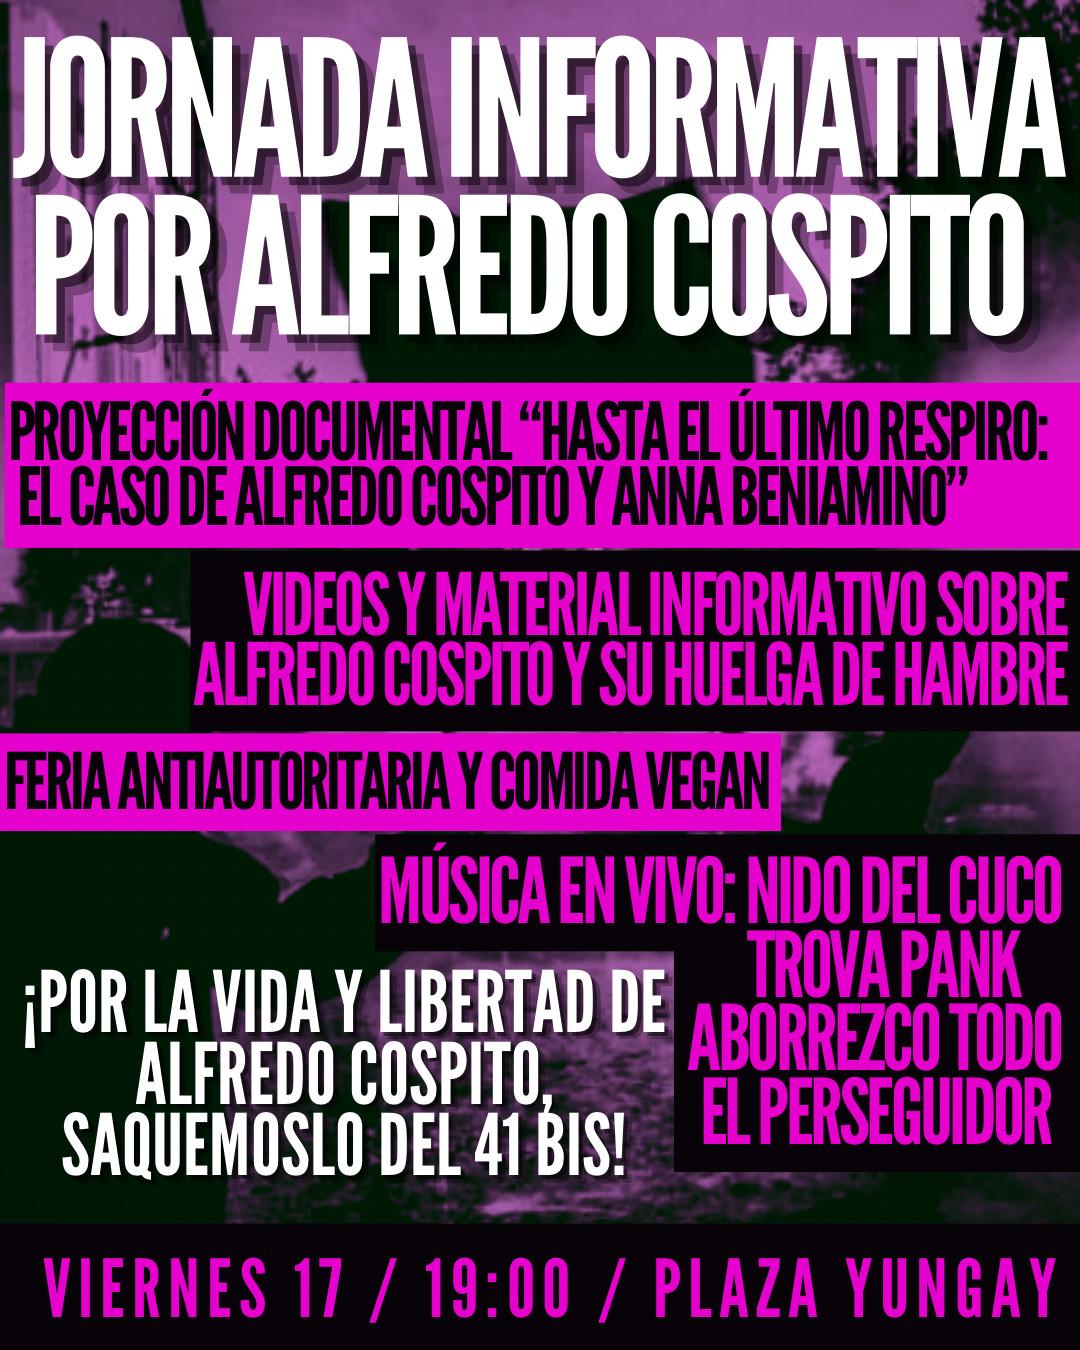 Chile: Jornada informativa por Alfredo Cospito (17 feb)